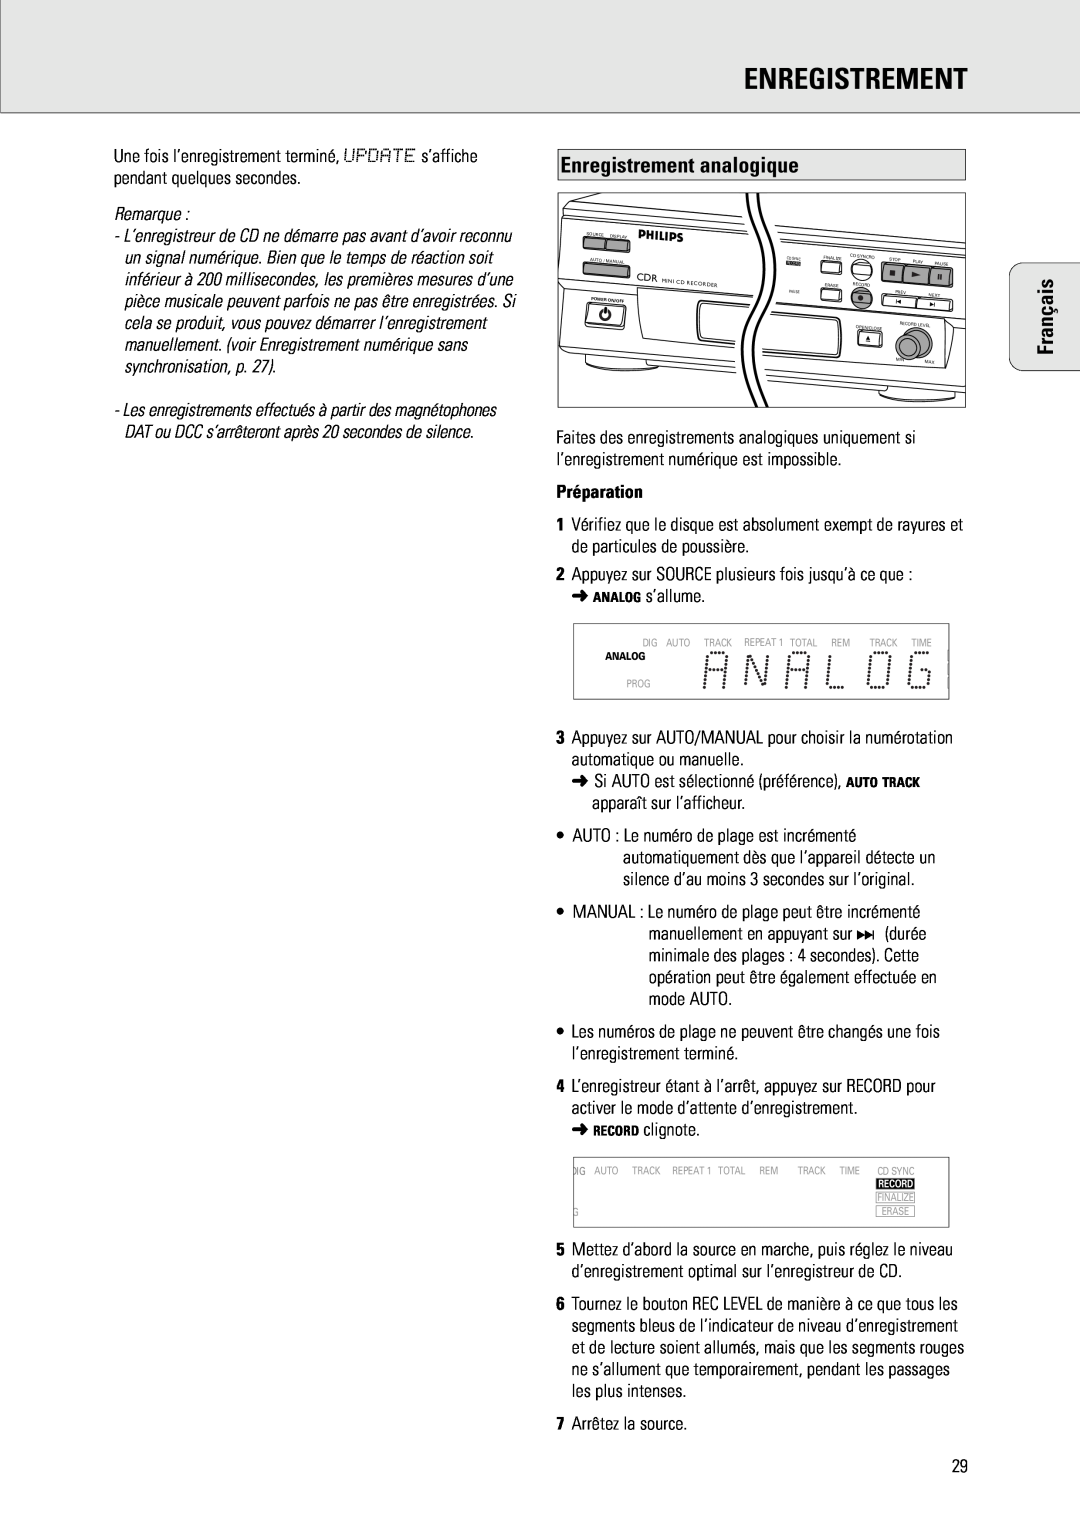 Philips CDR 538, CDR 560 manual Enregistrement analogique, Préparation, Français, Remarque 